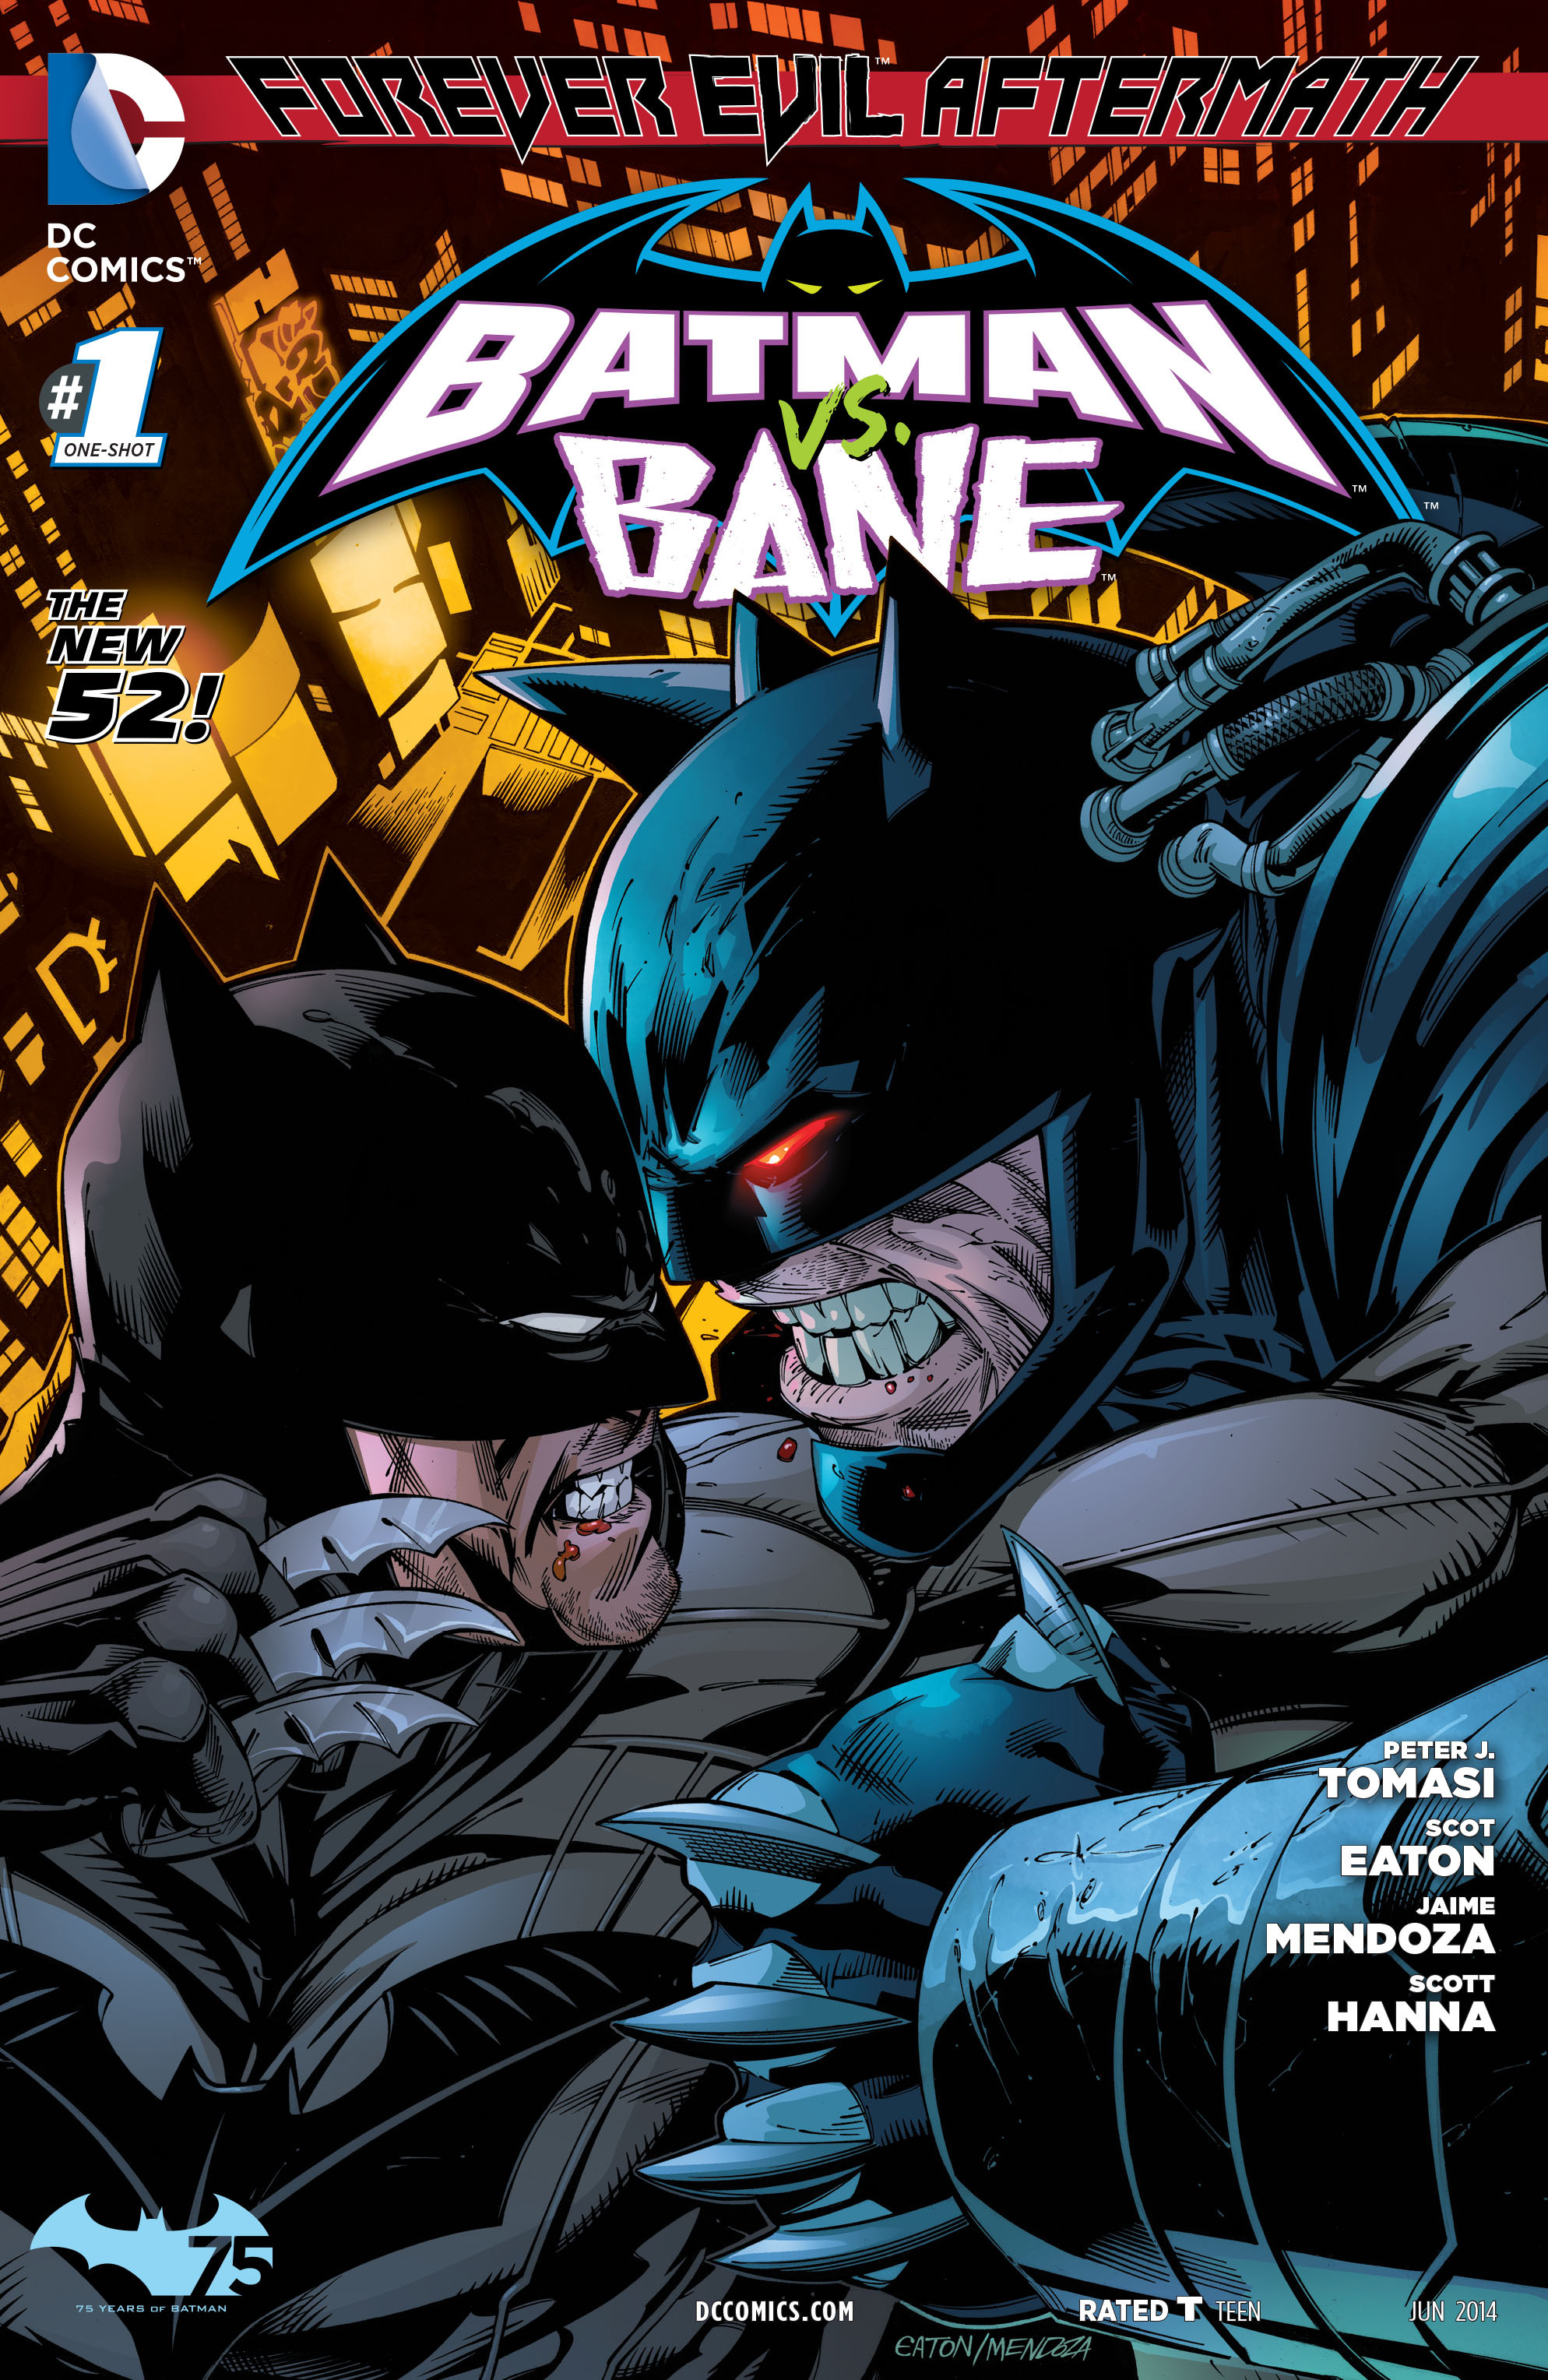 Forever Evil Aftermath: Batman Vs. Bane #2